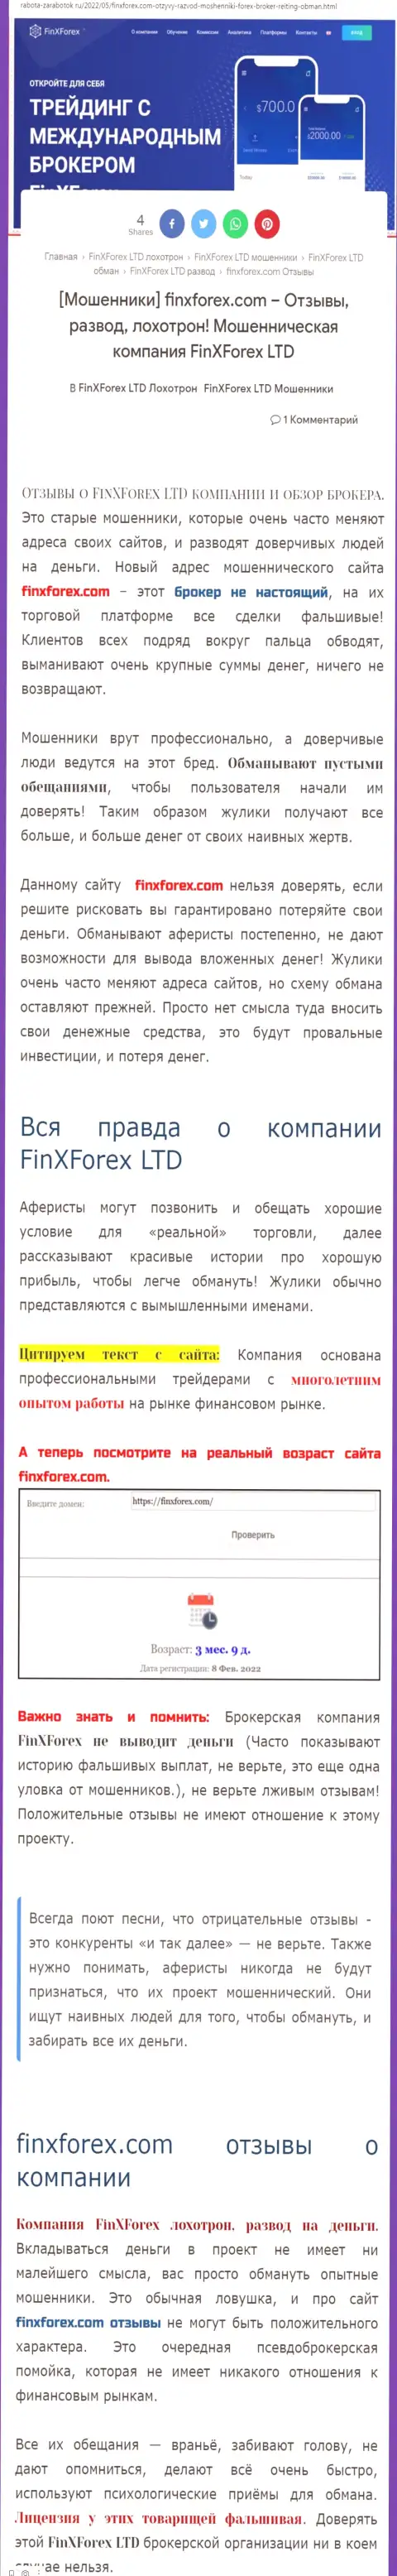 Автор статьи об FinXForex Com заявляет, что в конторе FinXForex жульничают